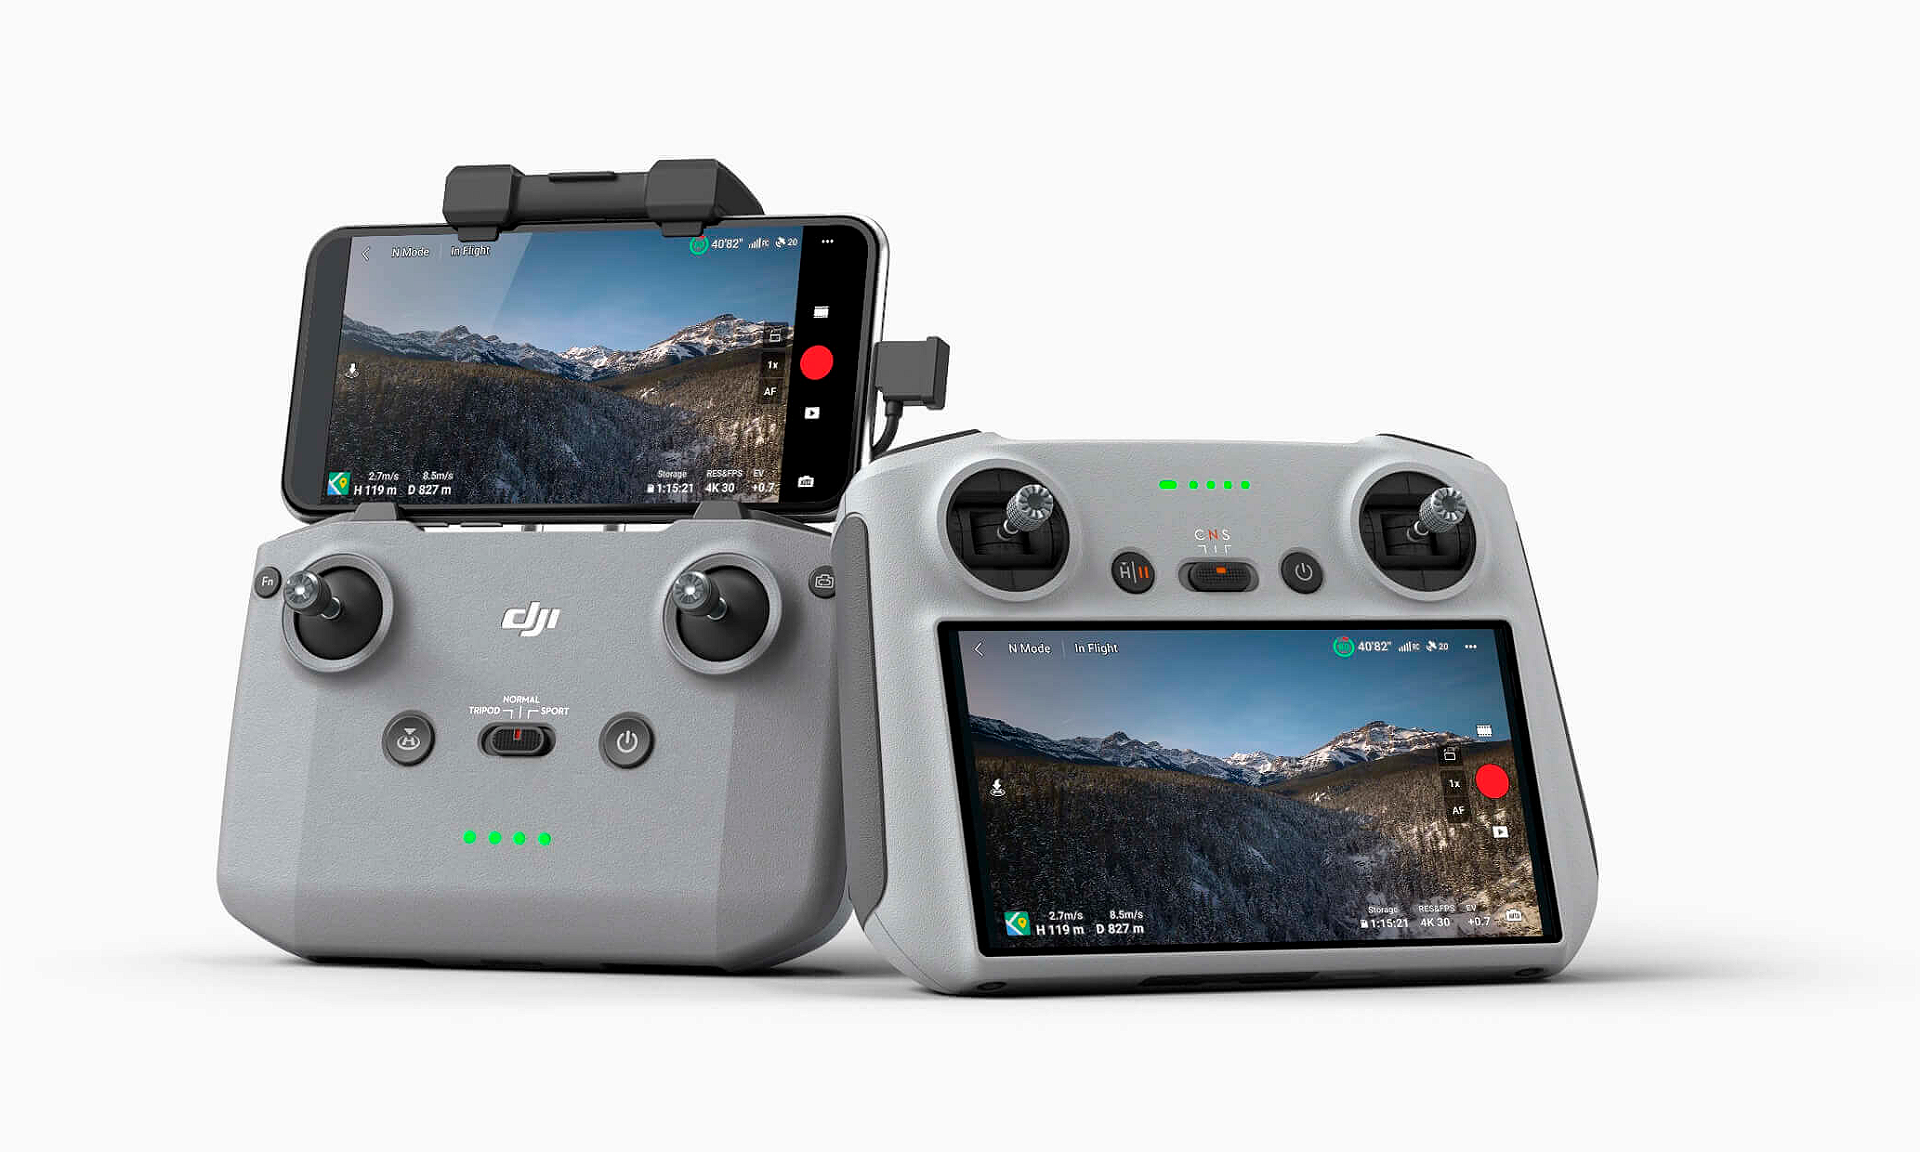 Drone DJI Mini 3 Pro + Controle com Tela + Fly More Kit (Versão Nacional) -  FlyPro - A melhor loja de Drones do Brasil!